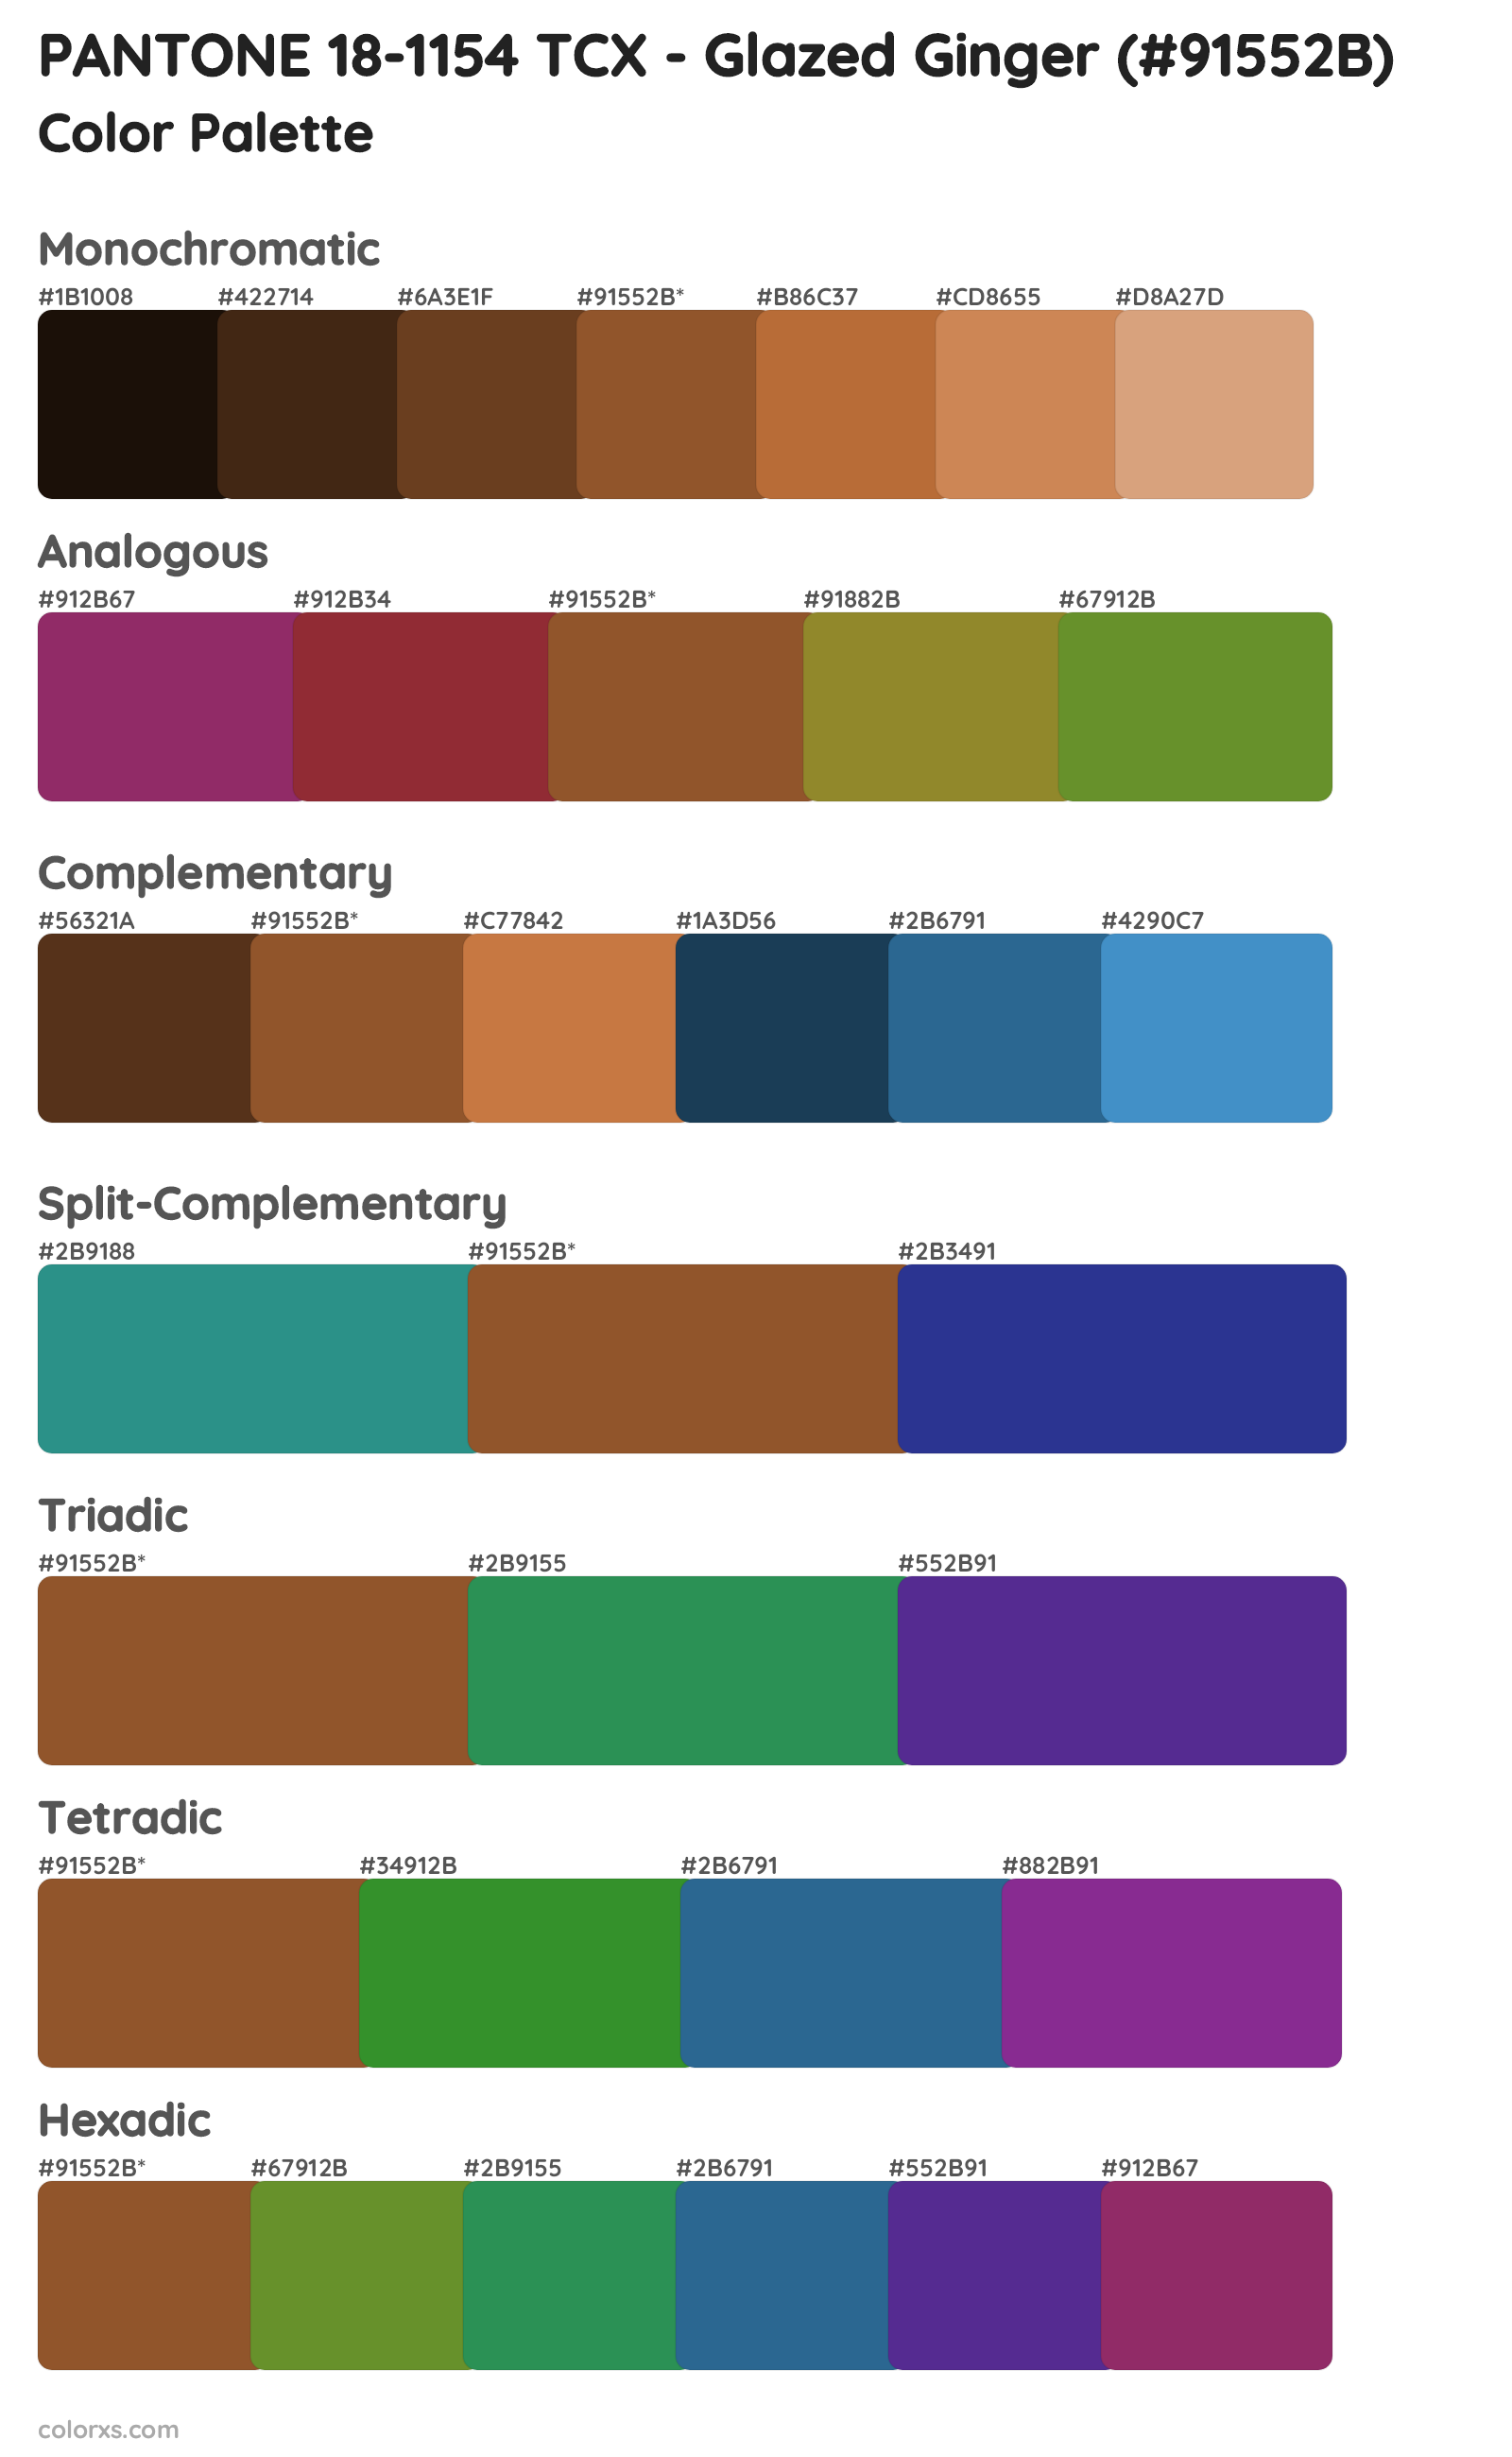 PANTONE 18-1154 TCX - Glazed Ginger Color Scheme Palettes